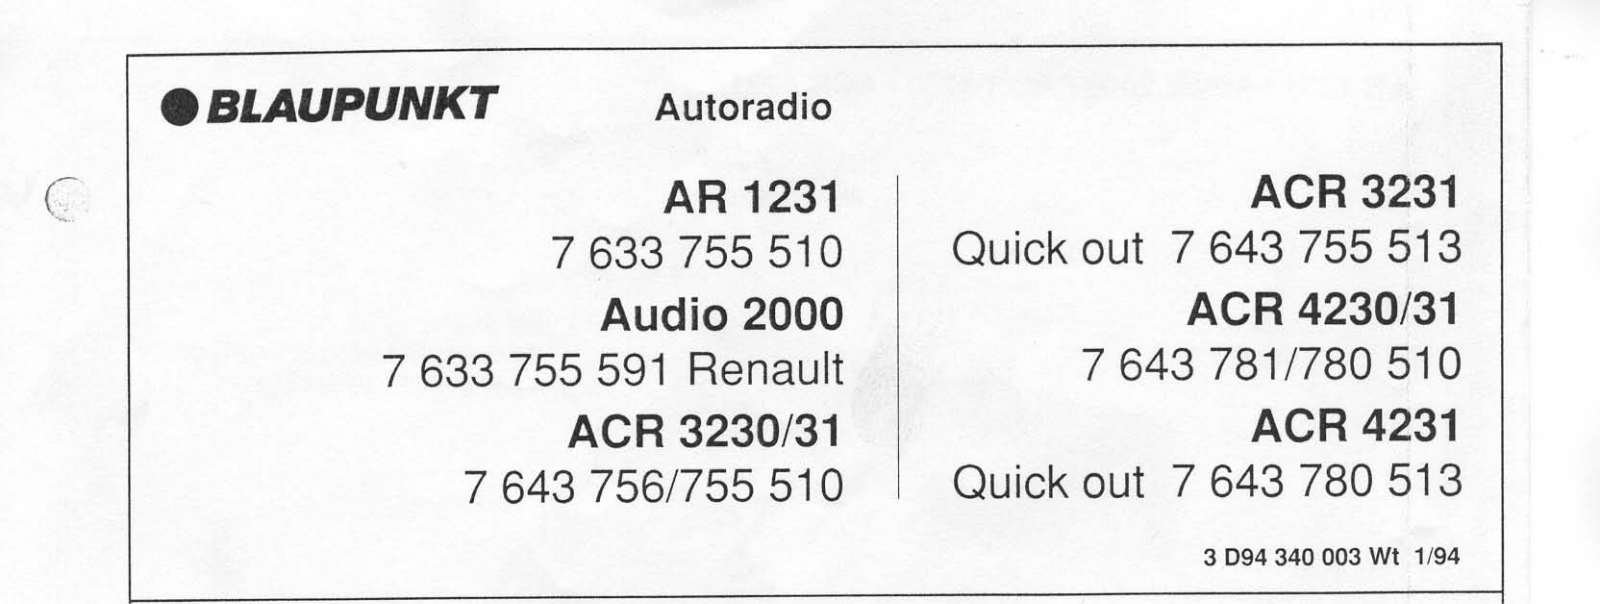 BLAUPUNKT ACR-3231, ACR-4231, ACR-4230, ACR-3230, AR-1231 Service Manual